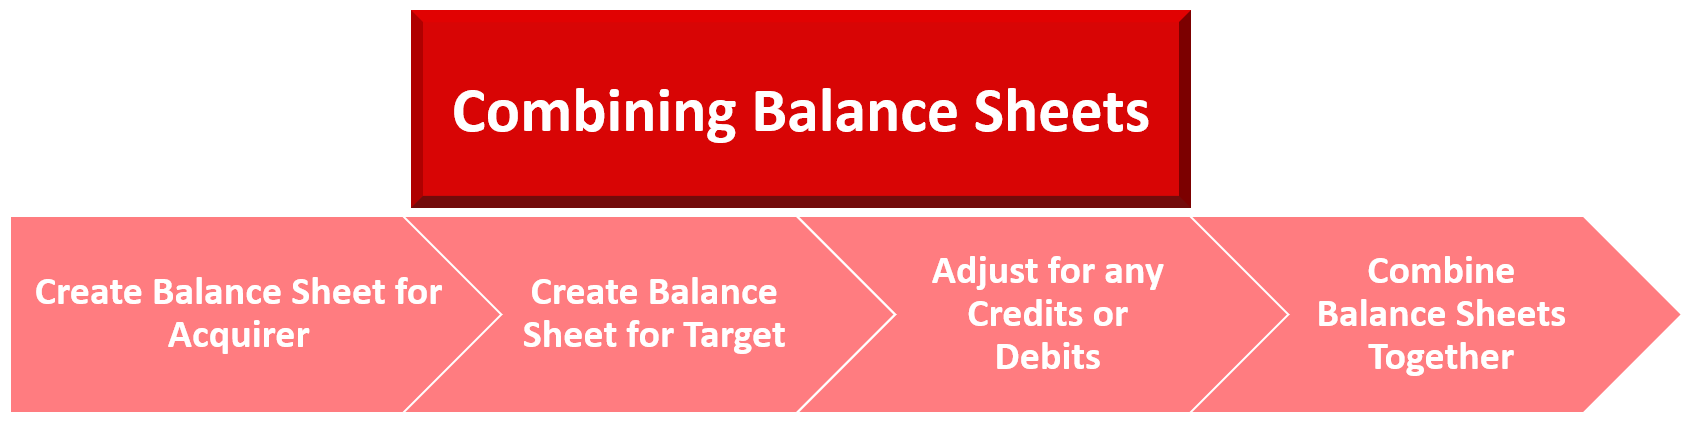 Combining Balance Sheets